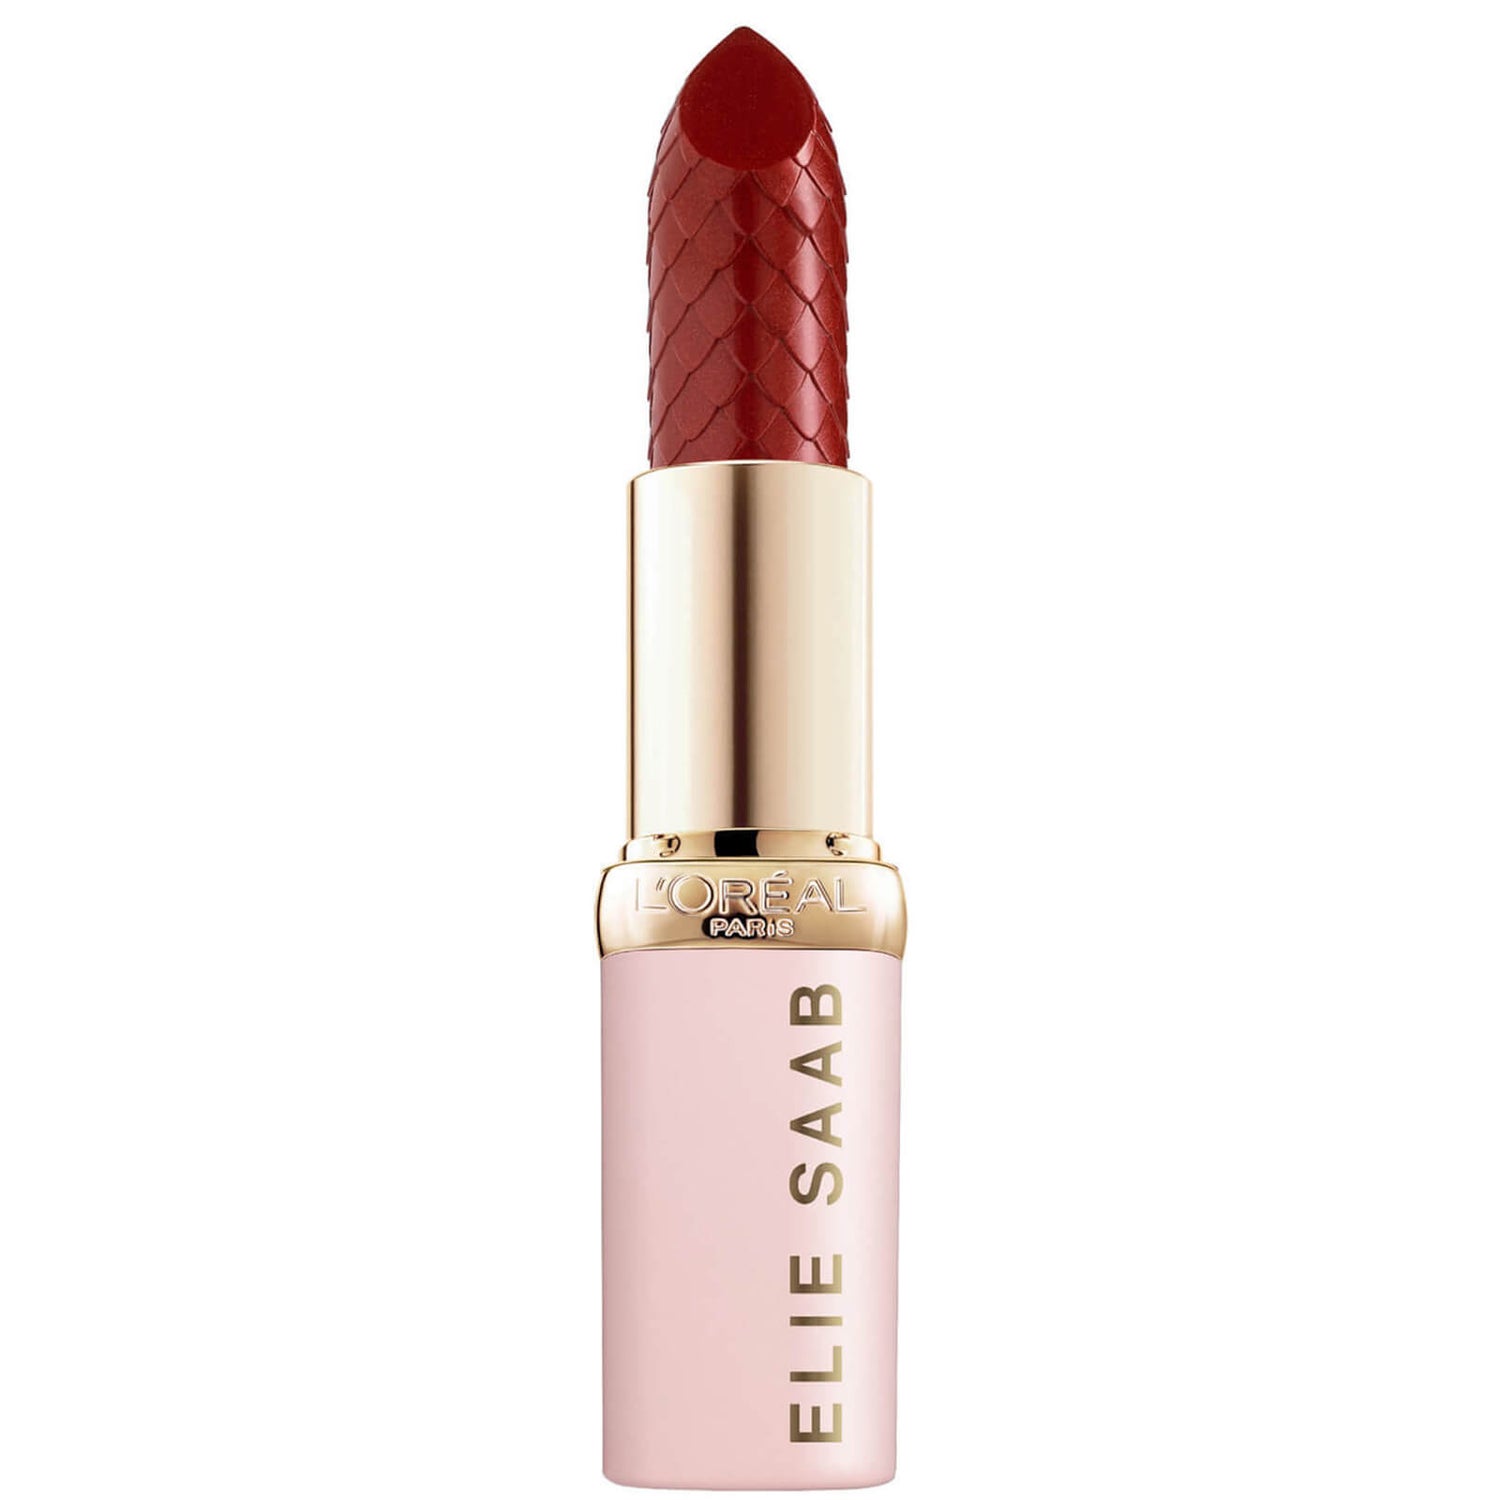 L'Oreal Paris X Elie Saab Bridal Collection, Limited Edition Color Riche Lipstick 24.1g (Verschiedene Farbtöne)